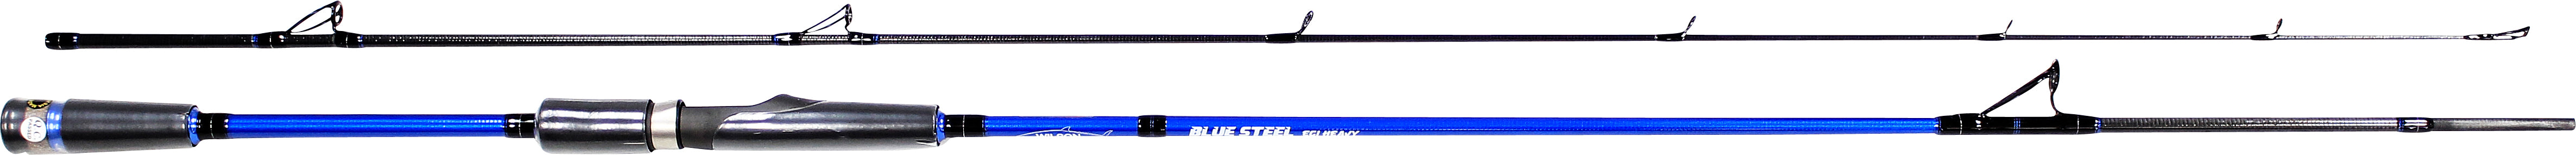 Wilson Blue Steel Rod 7'6" 2Pce Spin